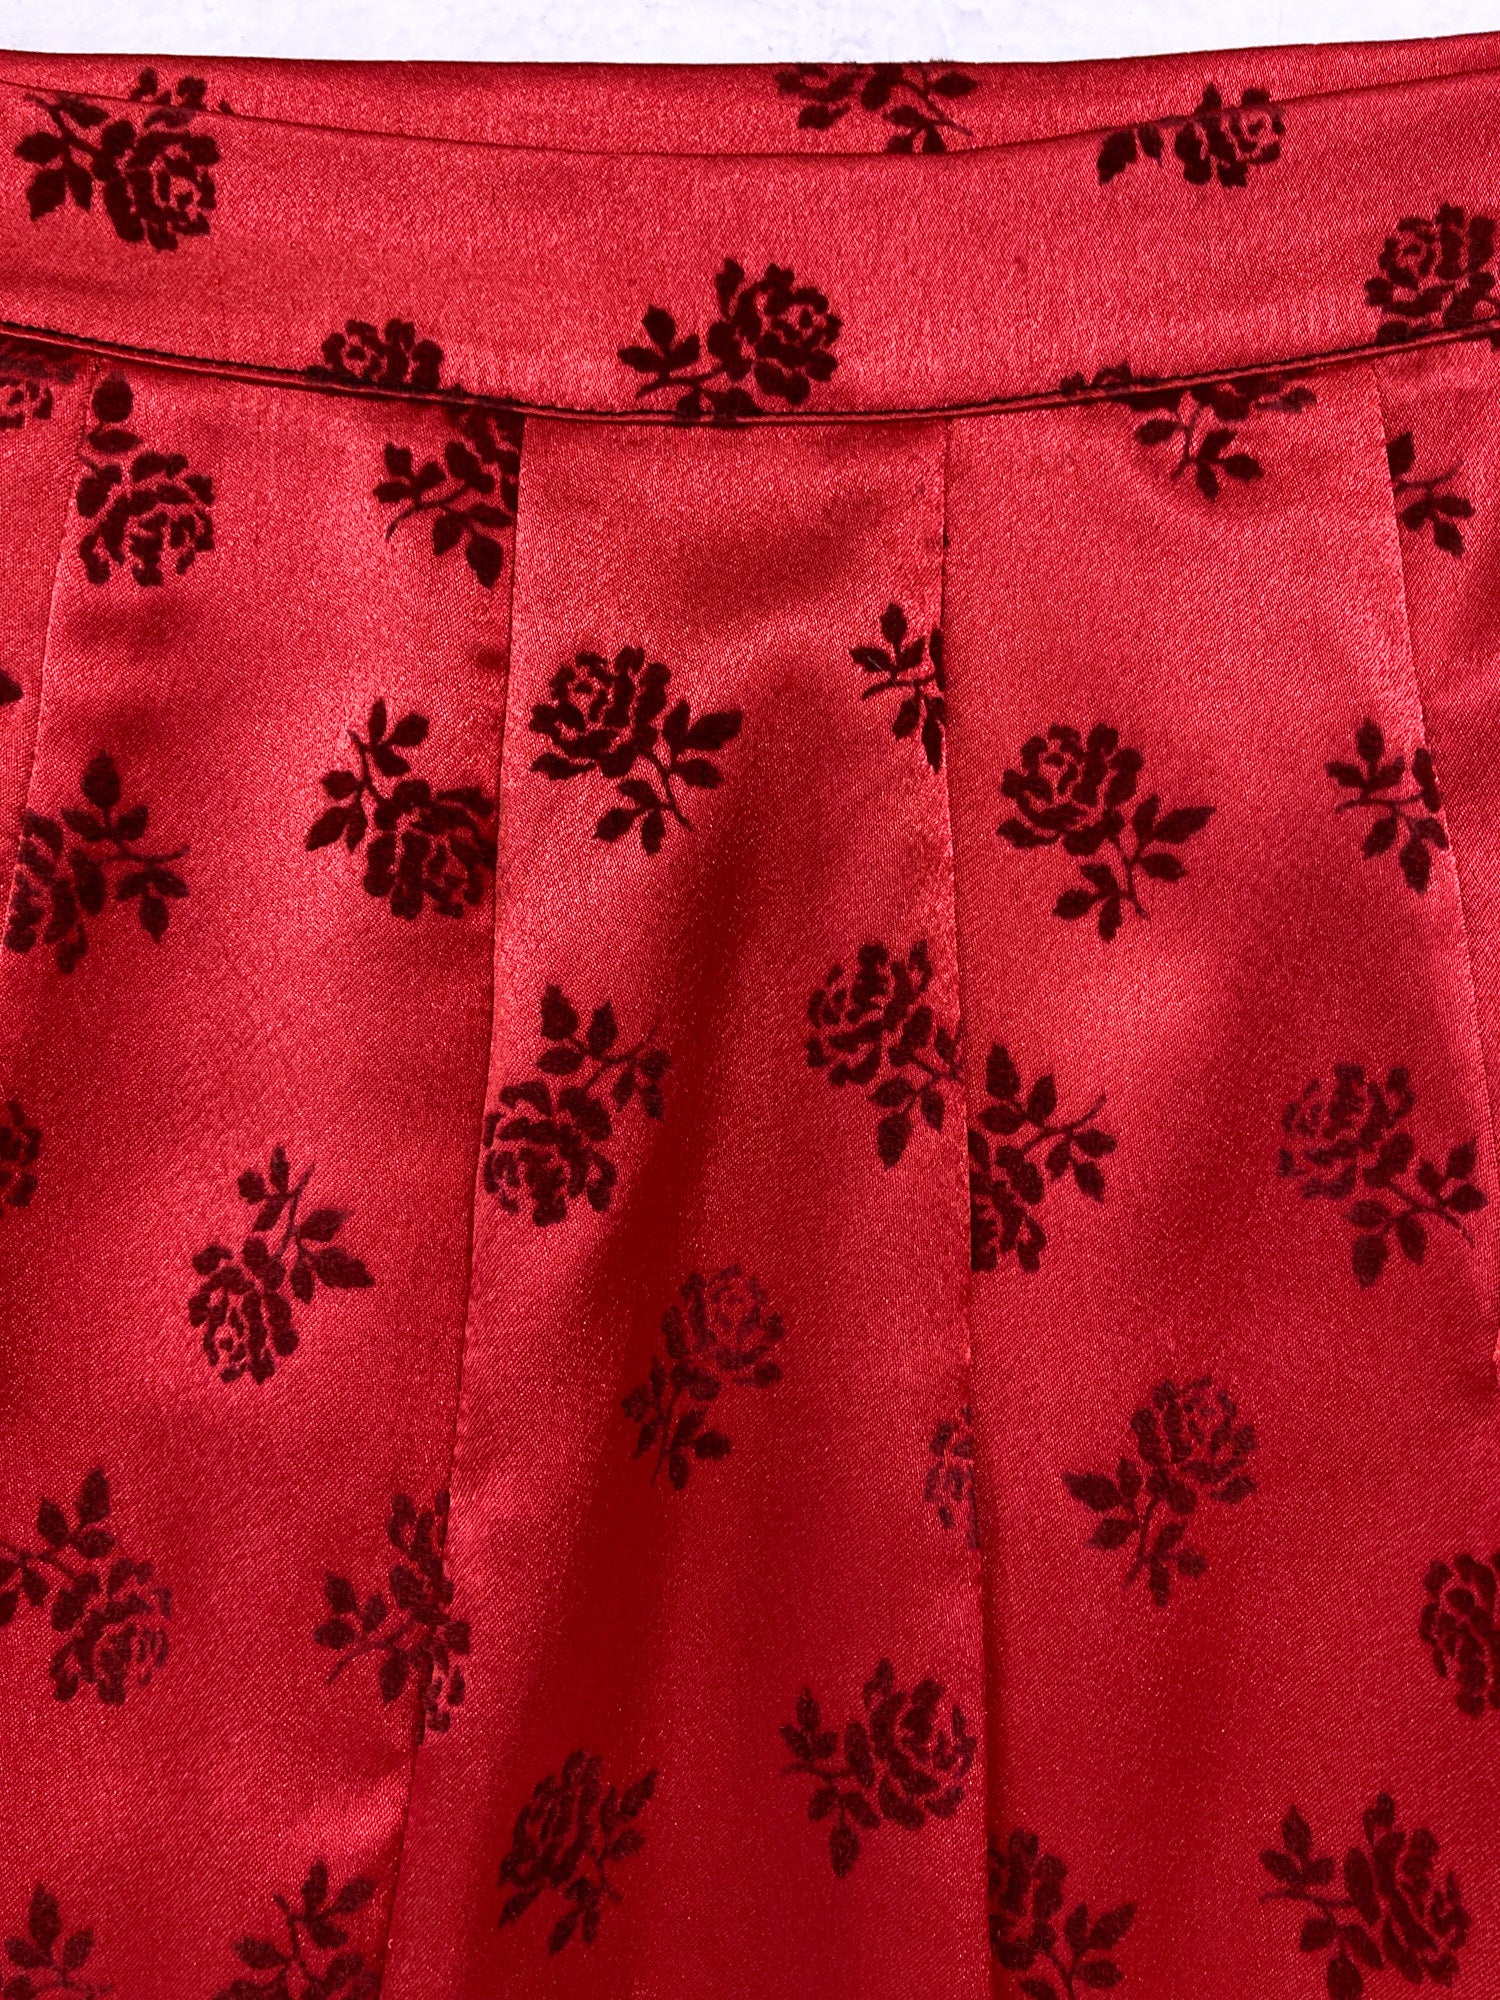 Jean Colonna red satin knee length skirt with velvet roses - S